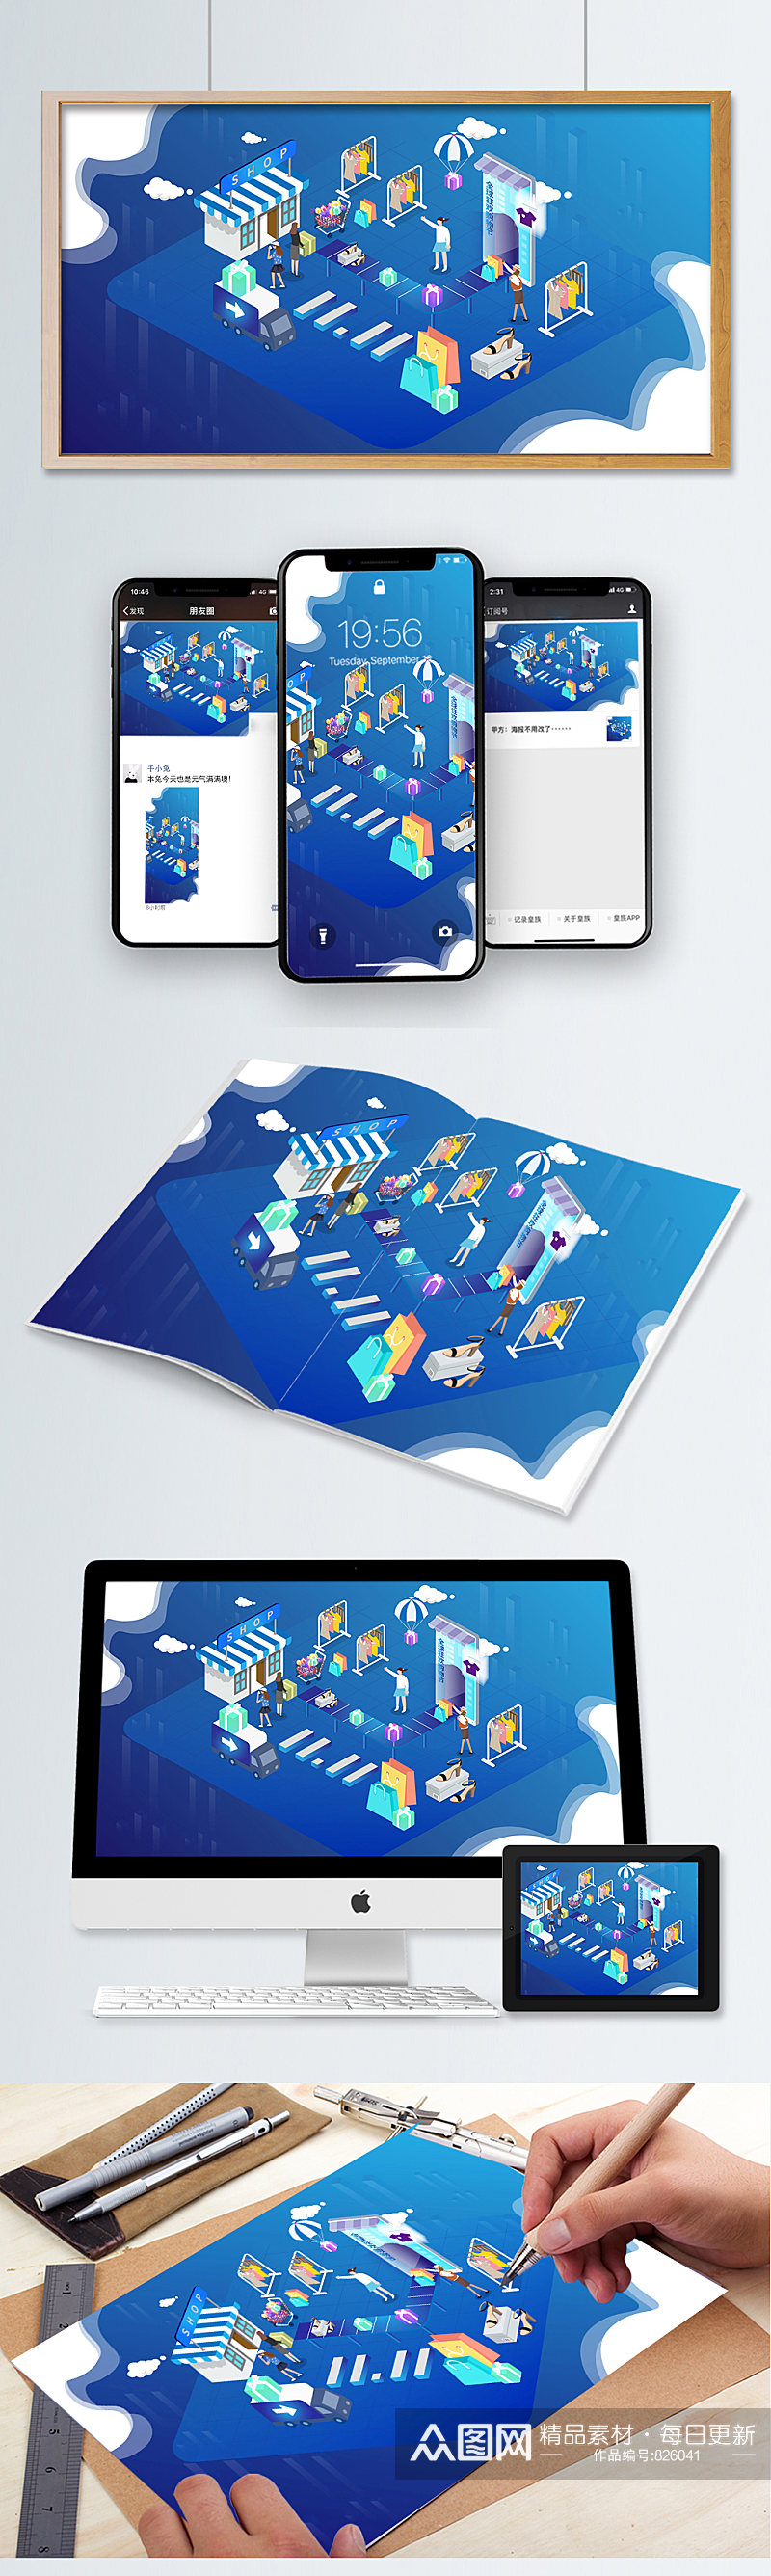 购物节手机网页UI白色海报界面设计素材